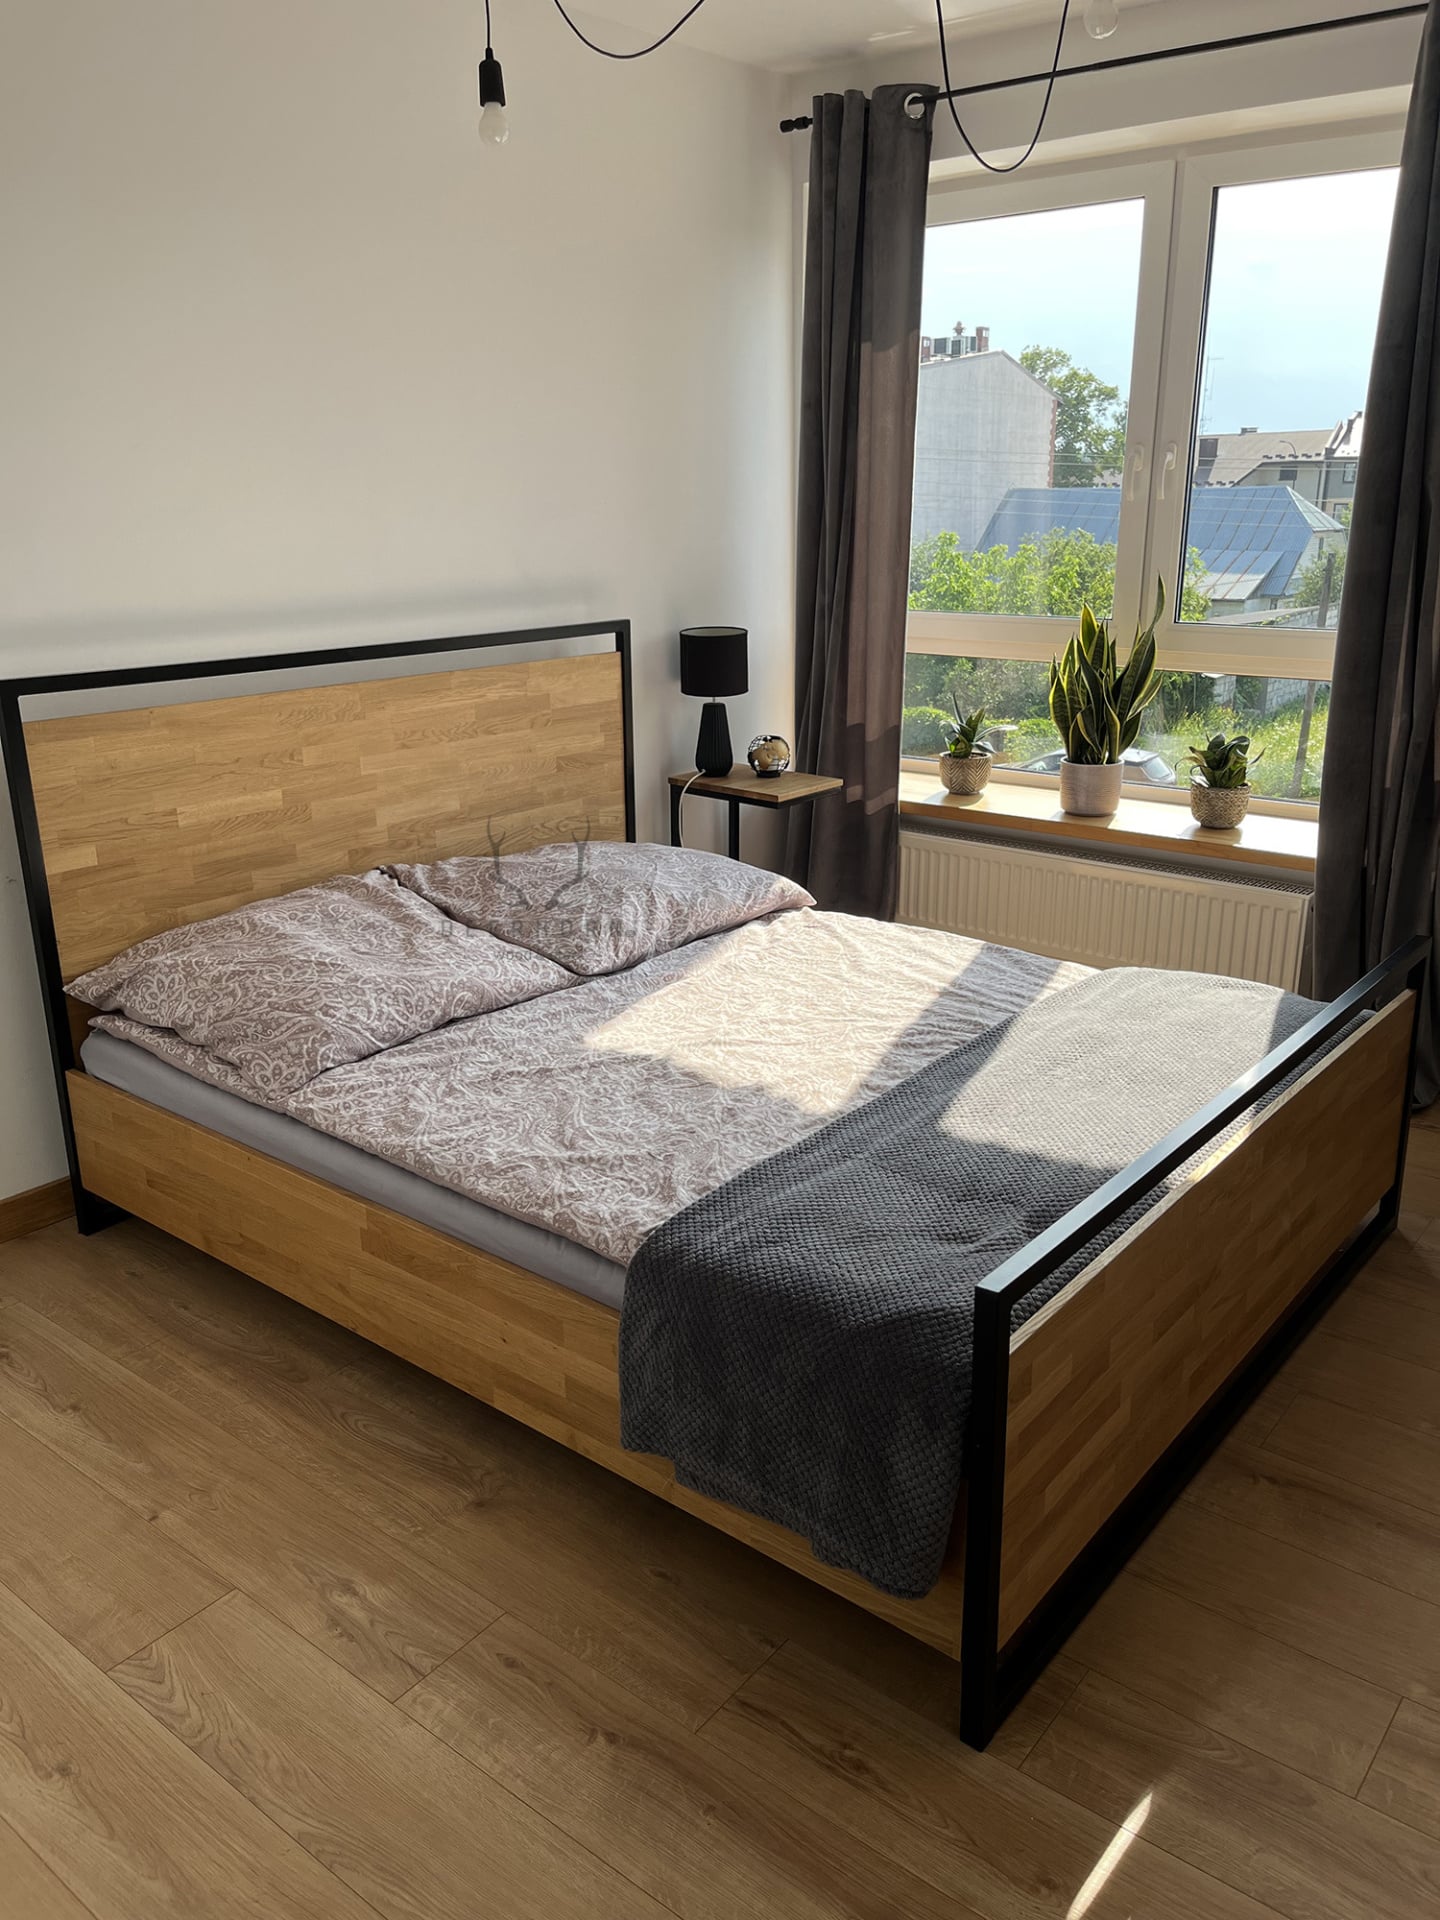 łóżko metalowe z drewnem